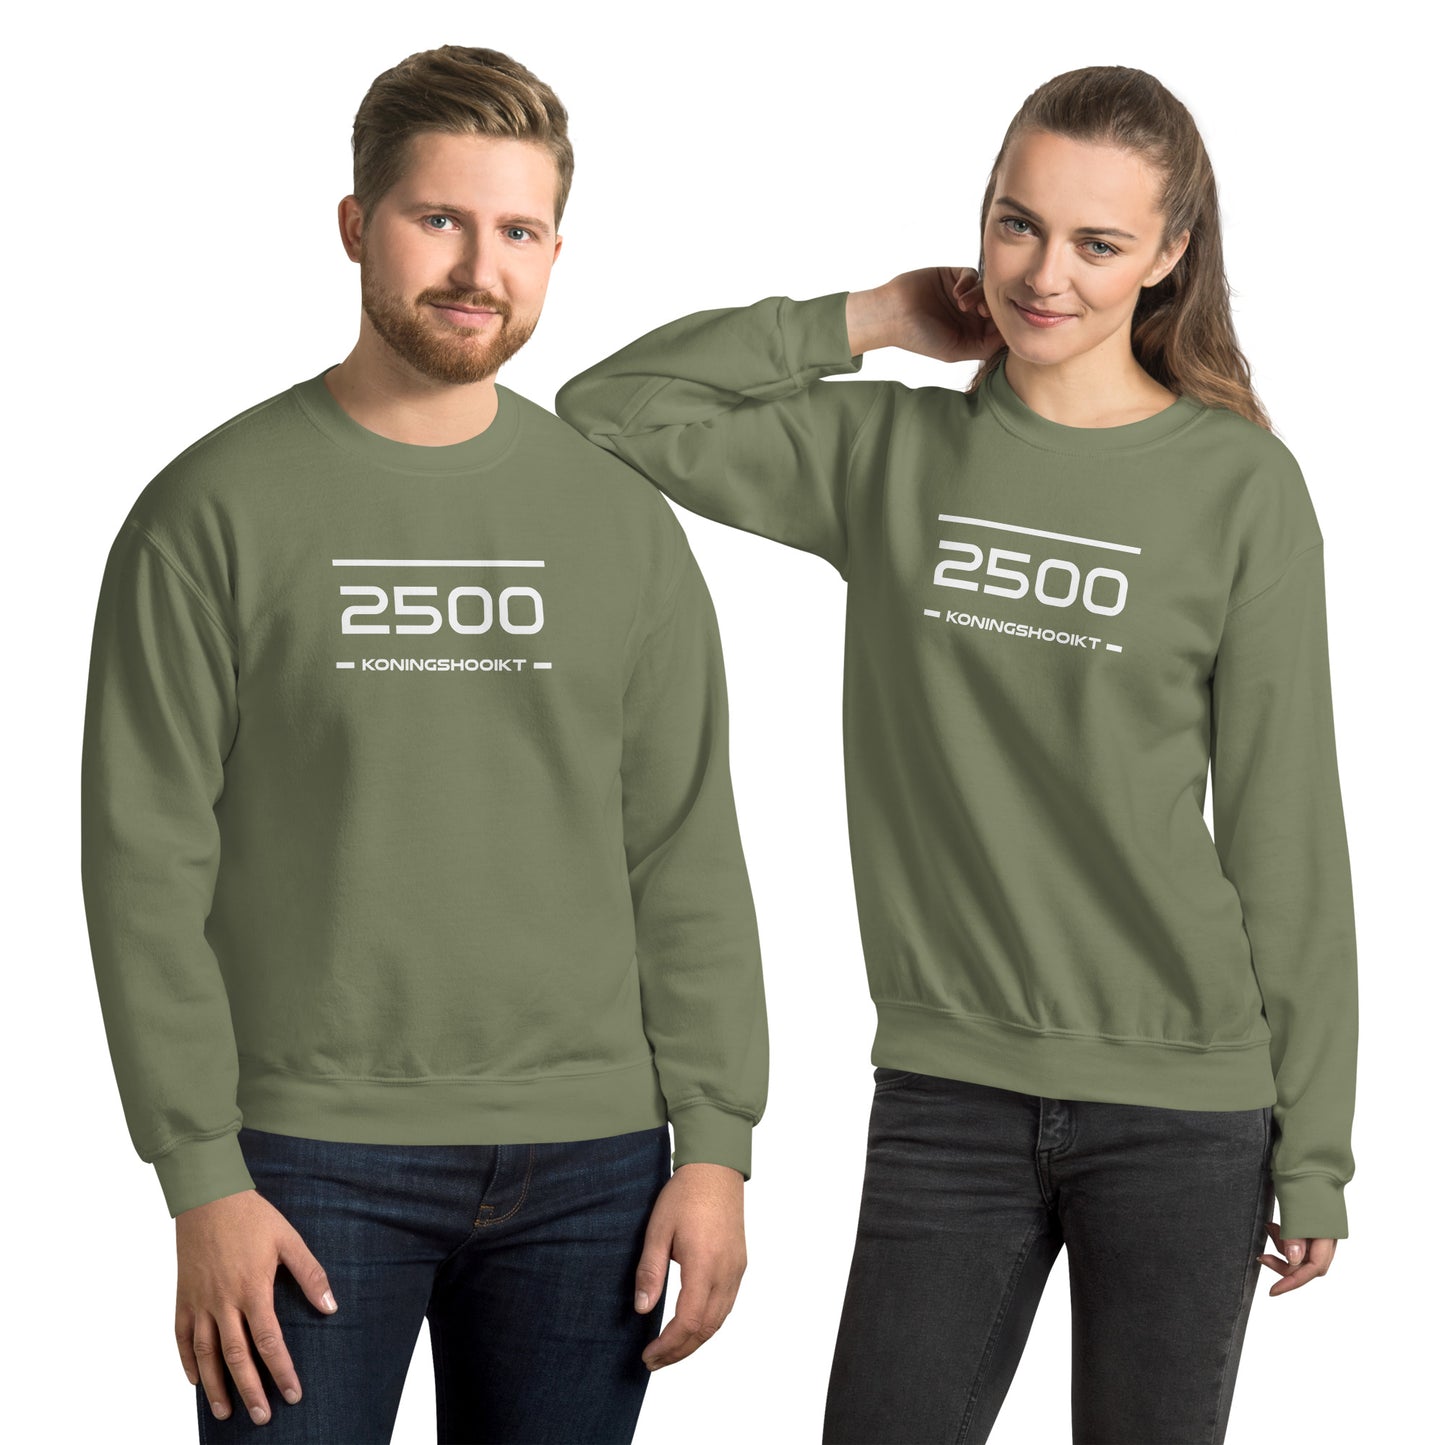 Sweater - 2500 - Koningshooikt (M/V)